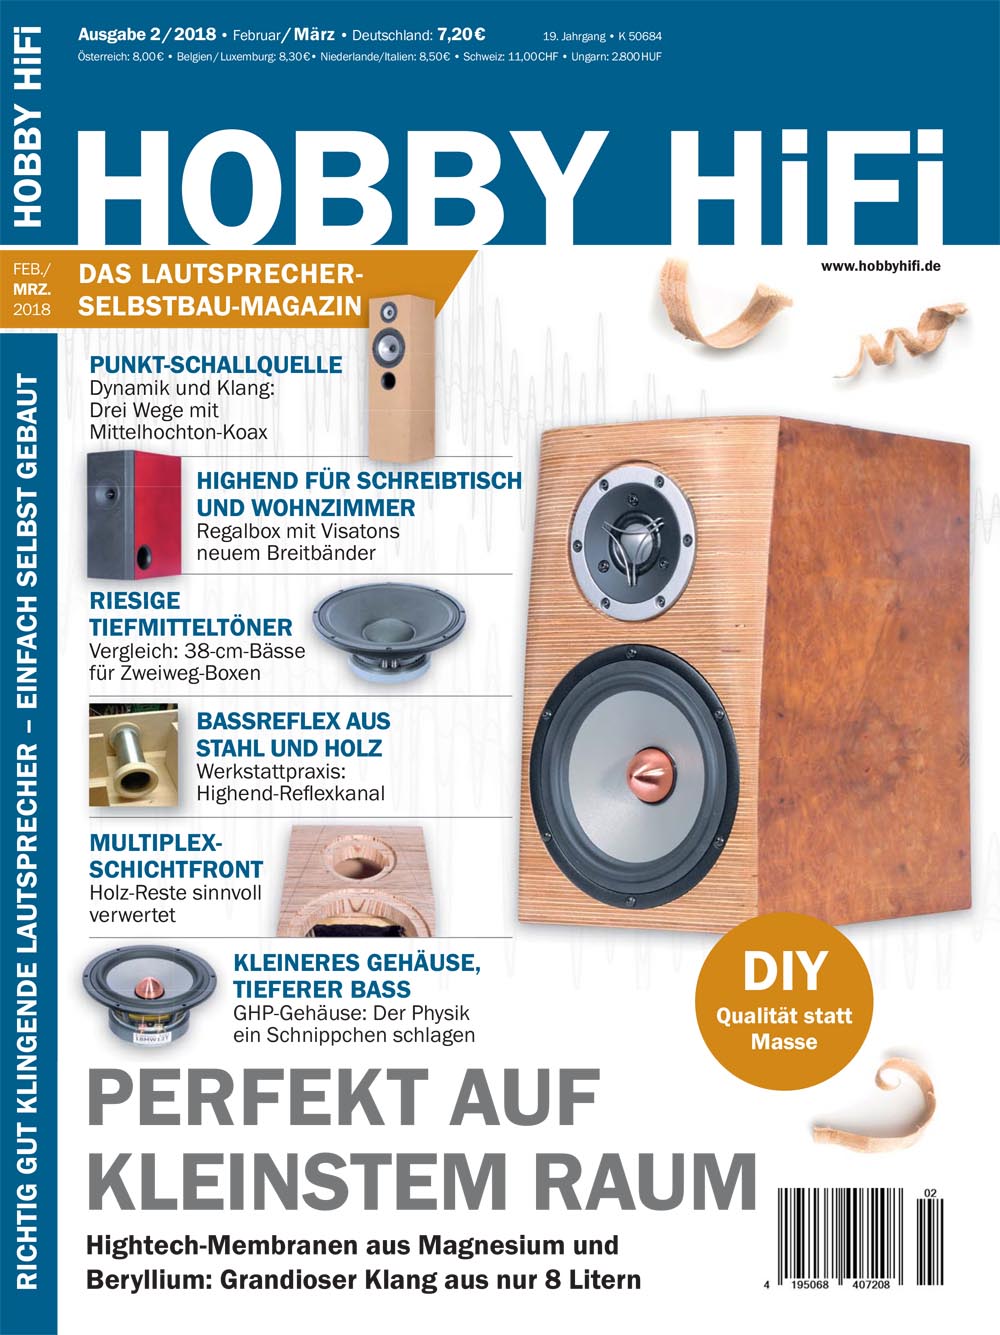 Hobby Hifi 2018 Ausgabe 2-2018